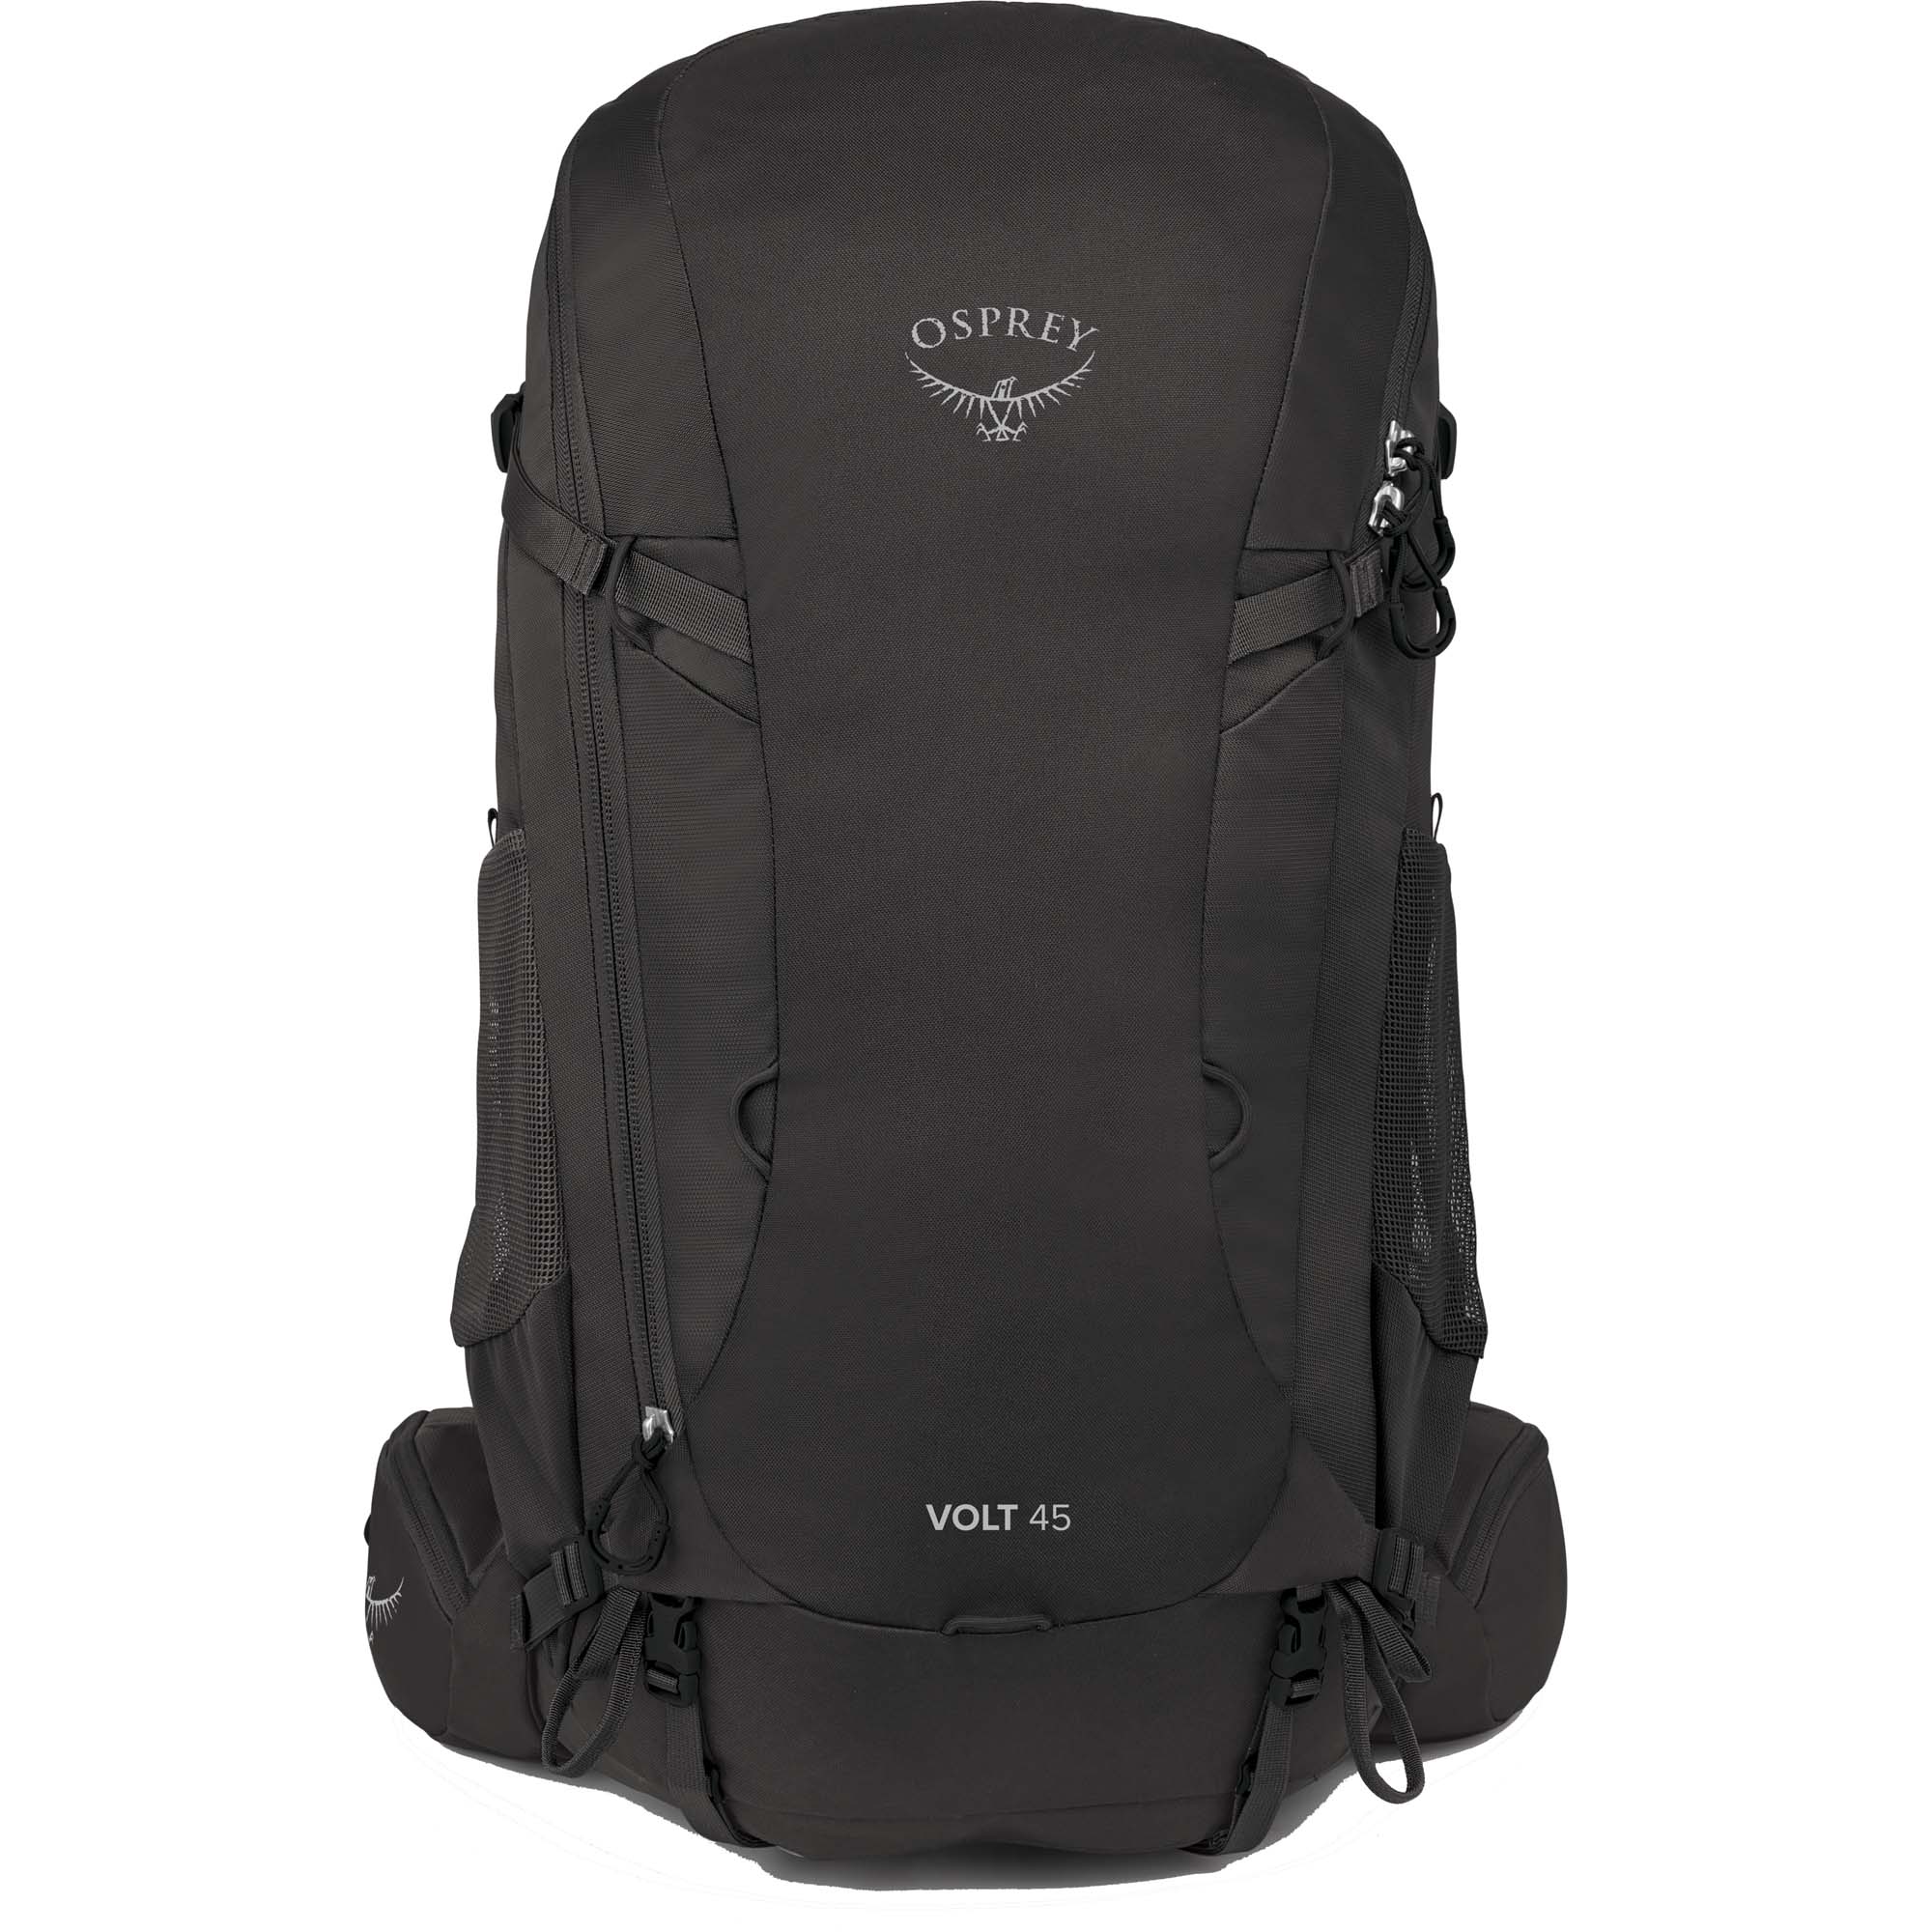 Osprey Volt 45 Fast & Light Backpacking Pack